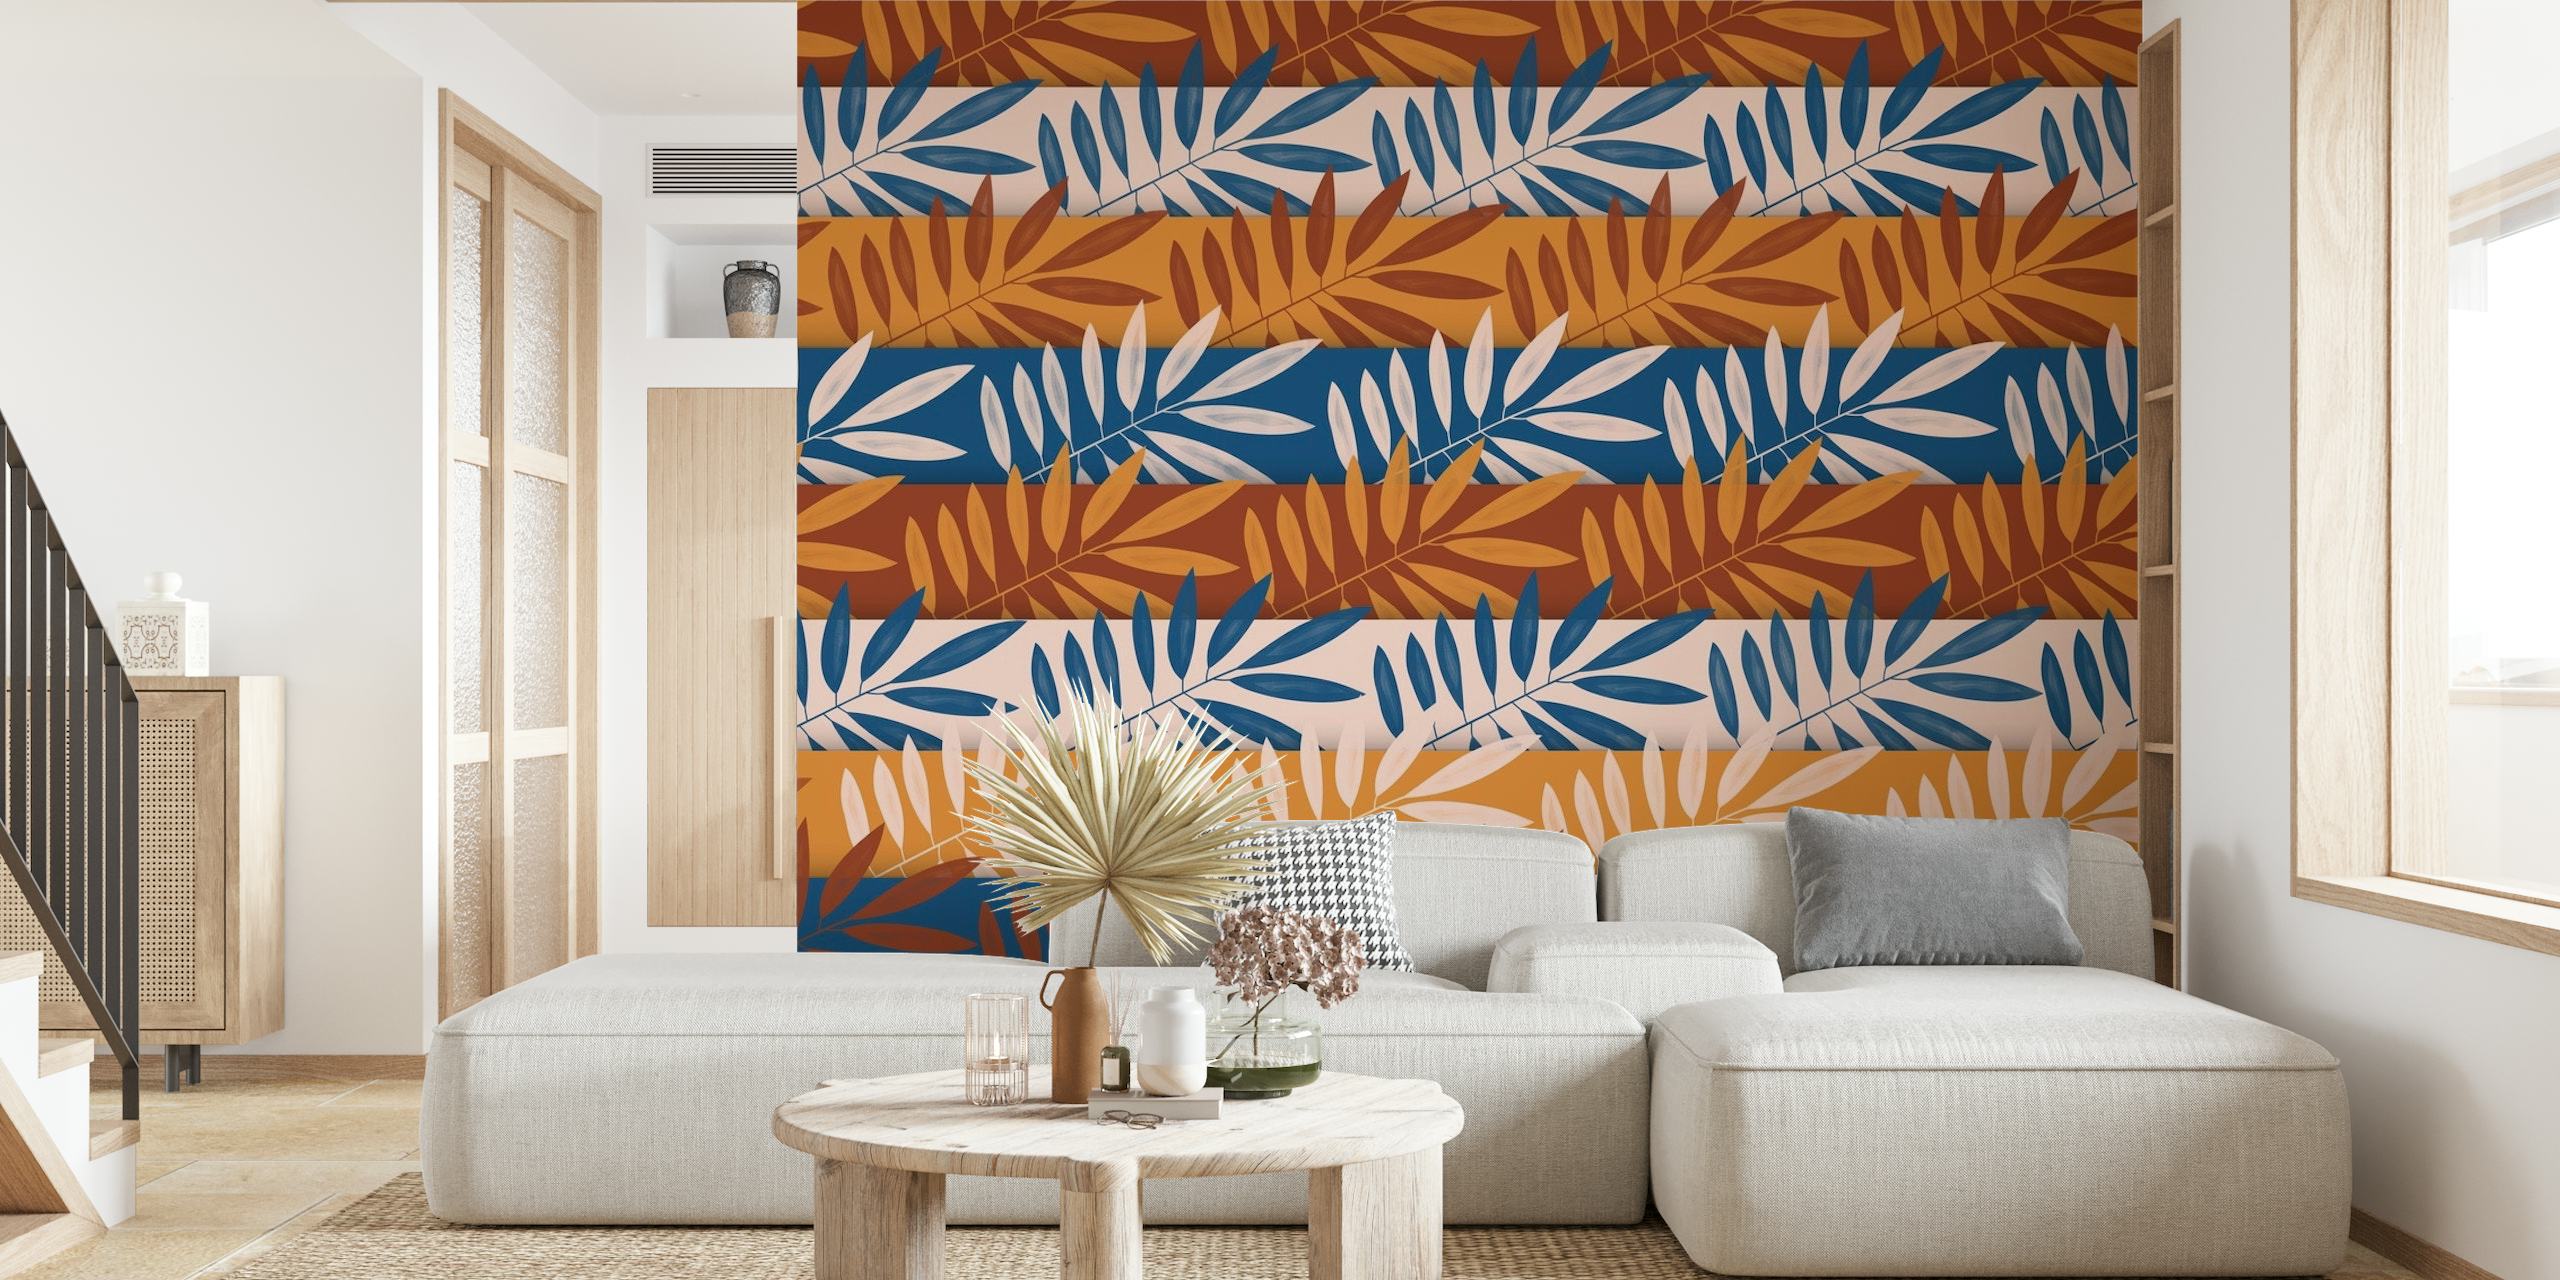 Tapeta Sahara Art z abstrakcyjnym wzorem liści w kolorach terakoty, błękitu i beżu.